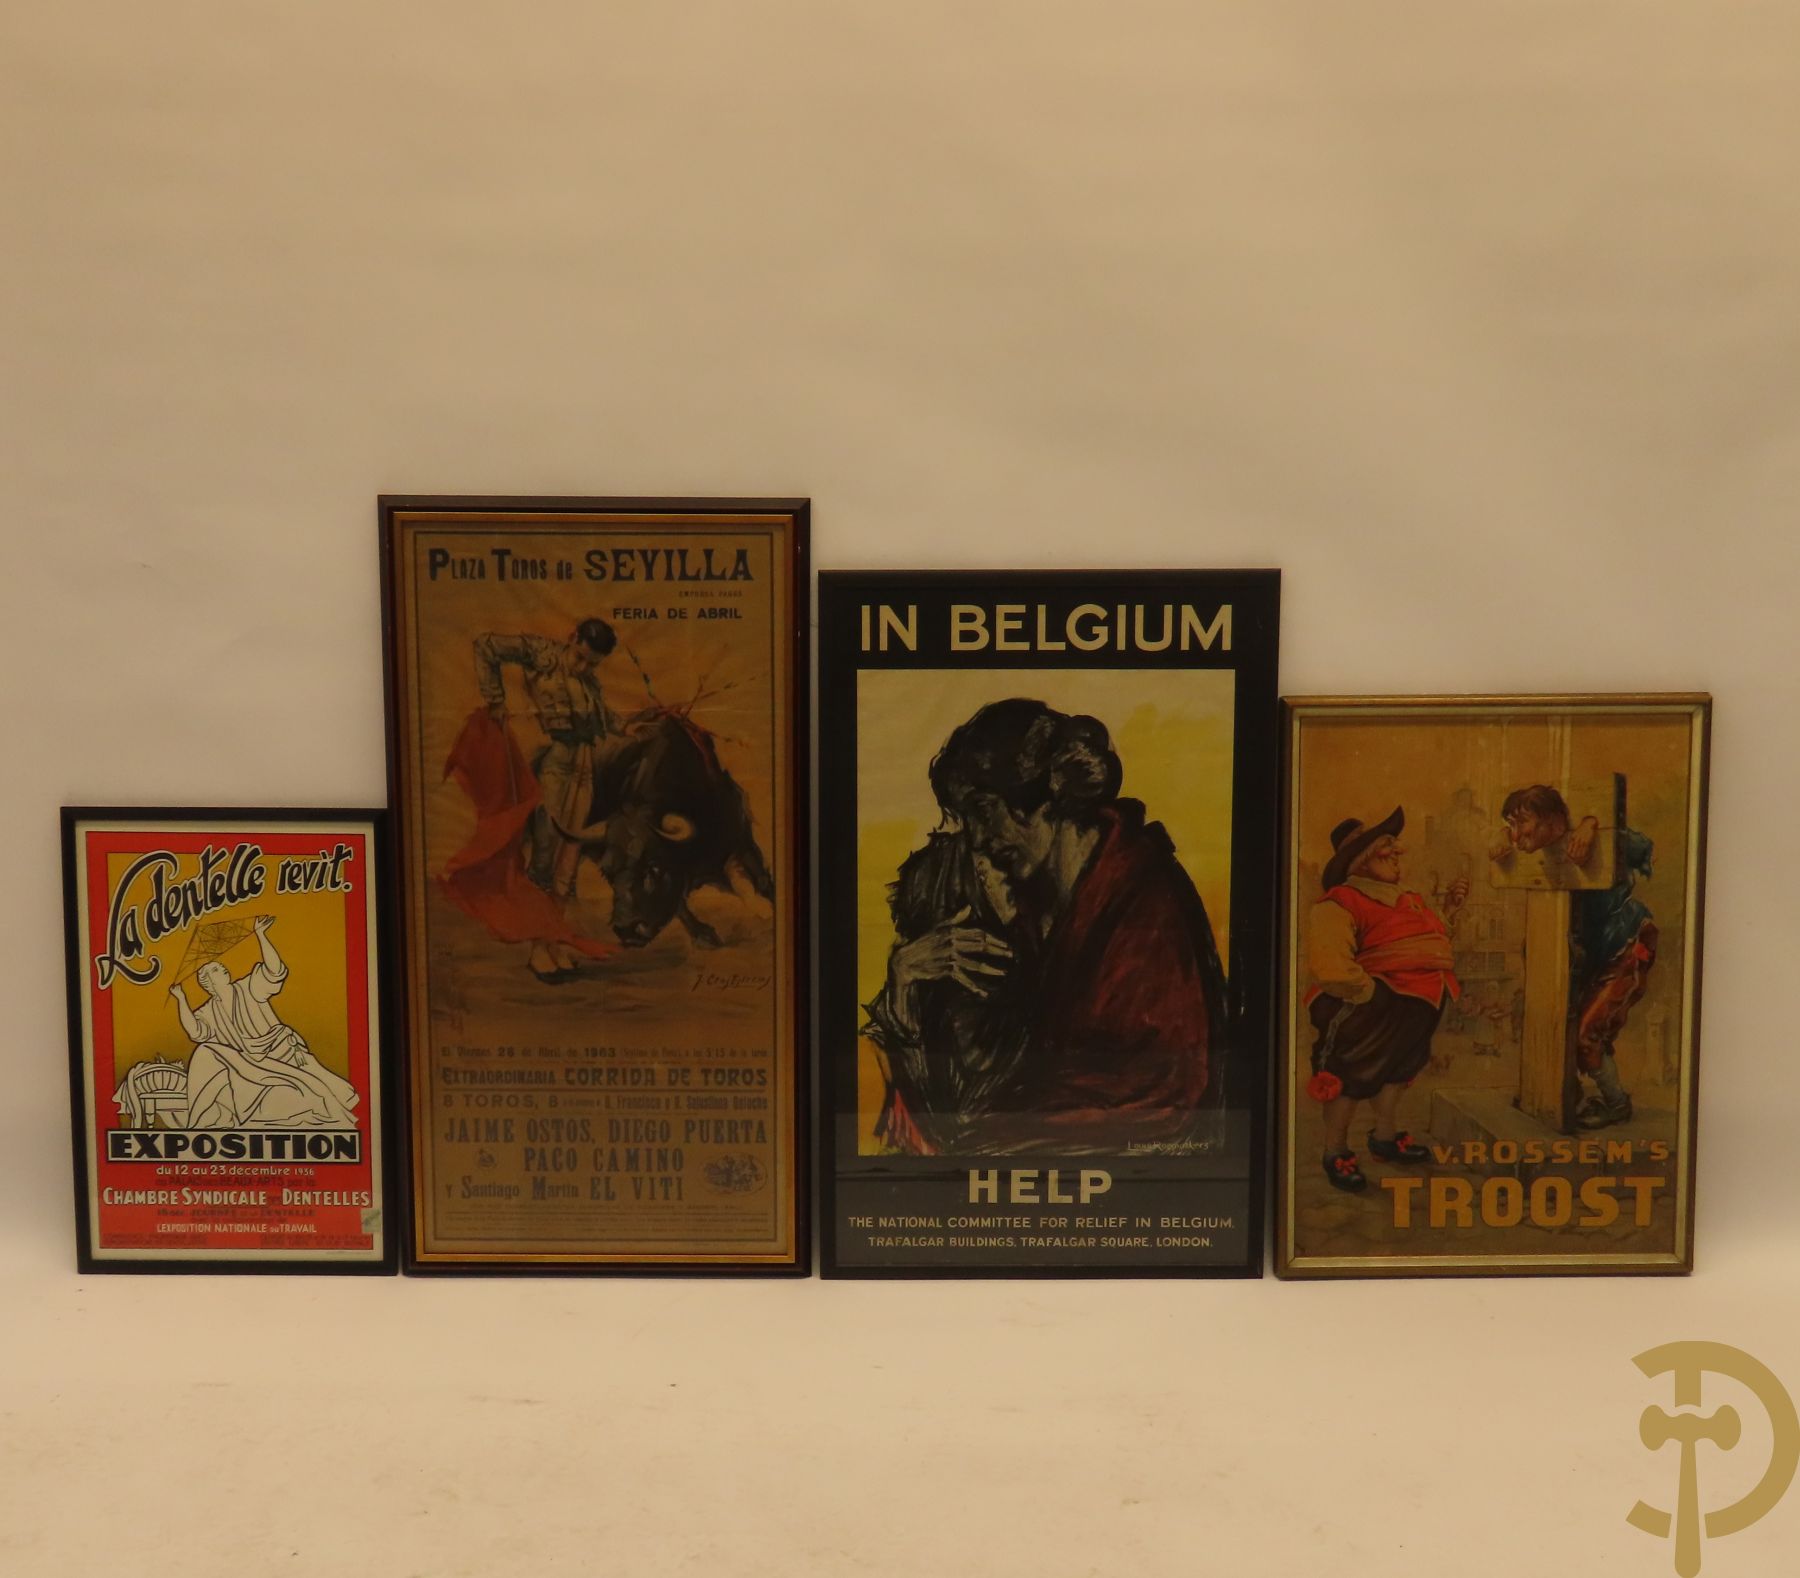 Vier oude affiches Marci : 'La Dentelle revit' exposition 1936 + Raemaekers Louis 'Help in Belgium' + Van Rossems troost + Plaza Toros de Sevilla door Crosestrems 1963